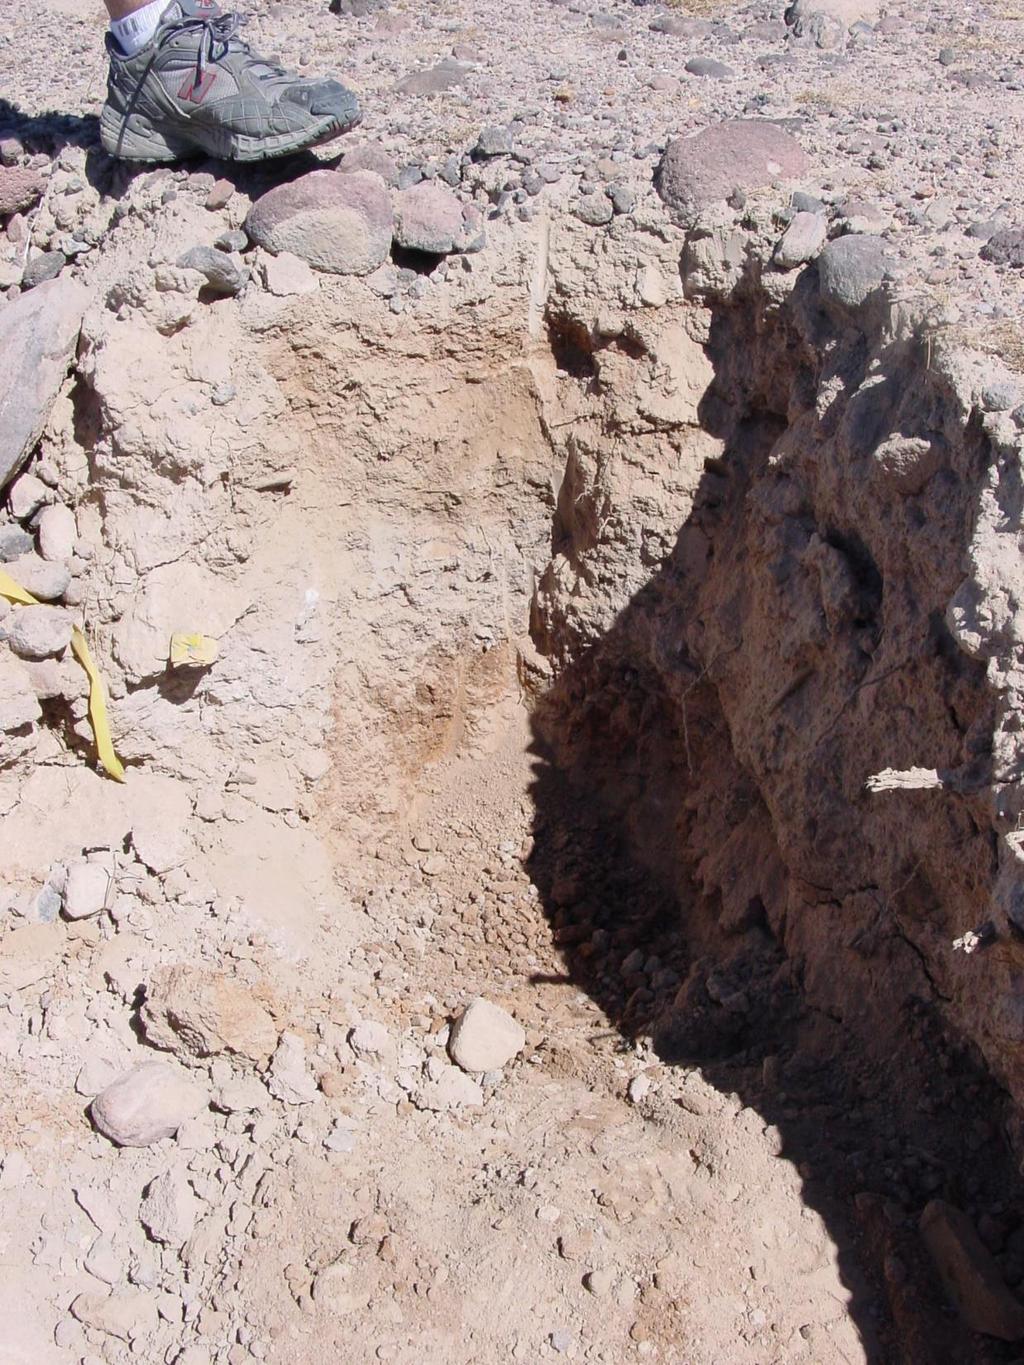 loess cap argillic (clay-rich) compound soil